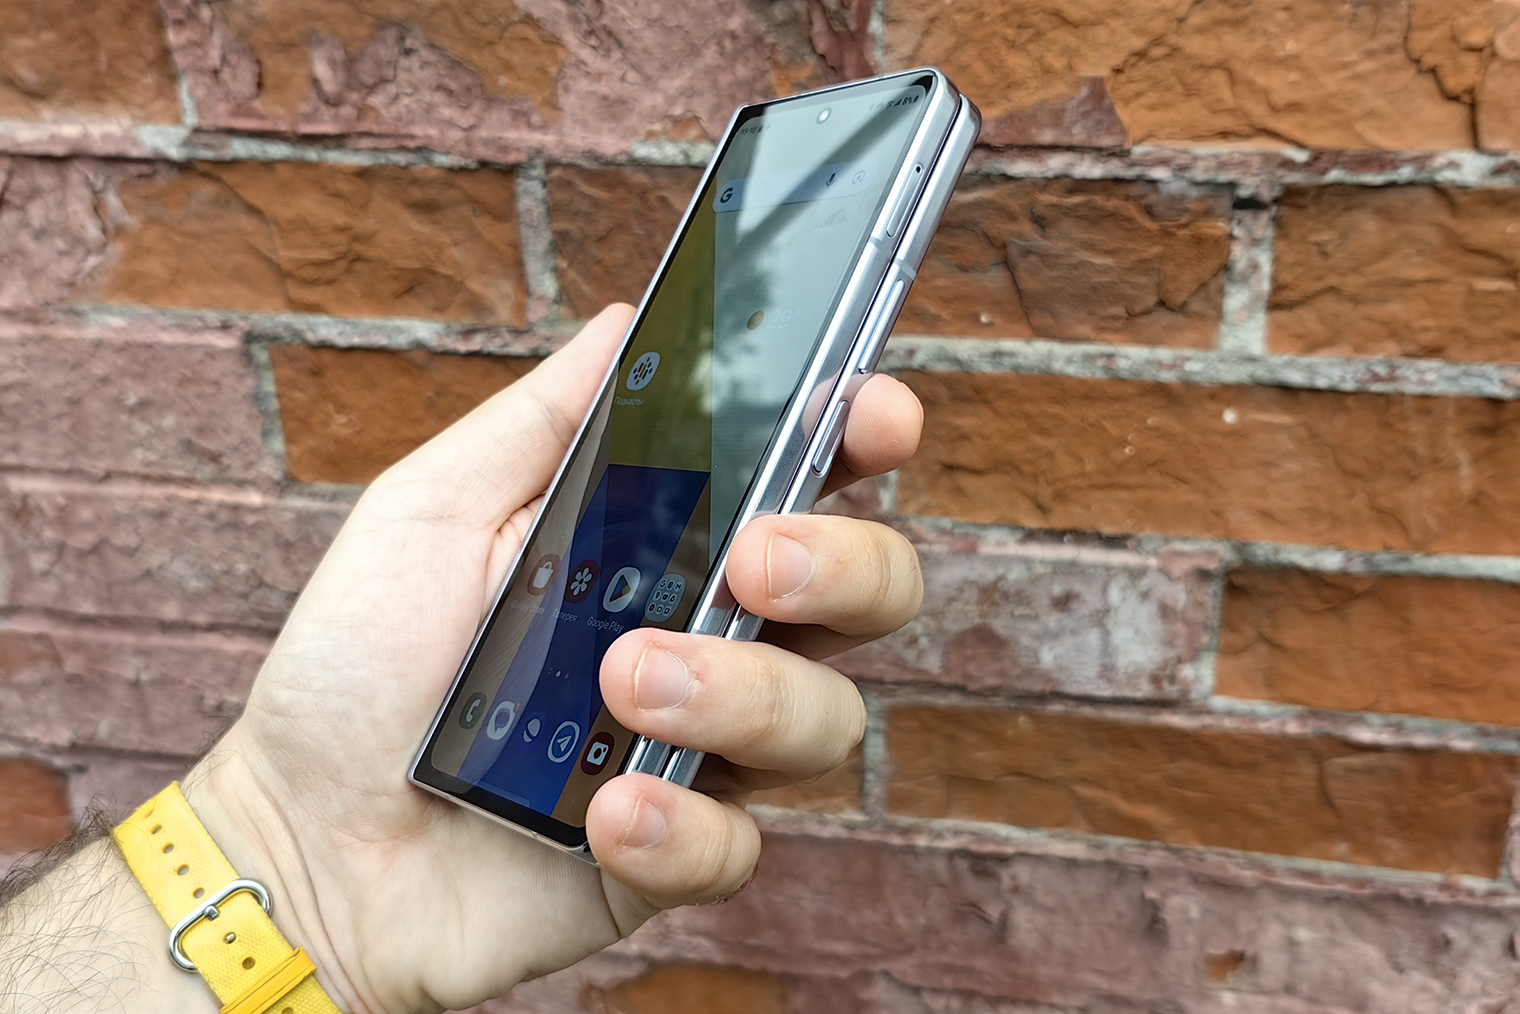 В закрытом виде смартфон толстый, но узкий — до сканера отпечатков легко дотянуться любой рукой